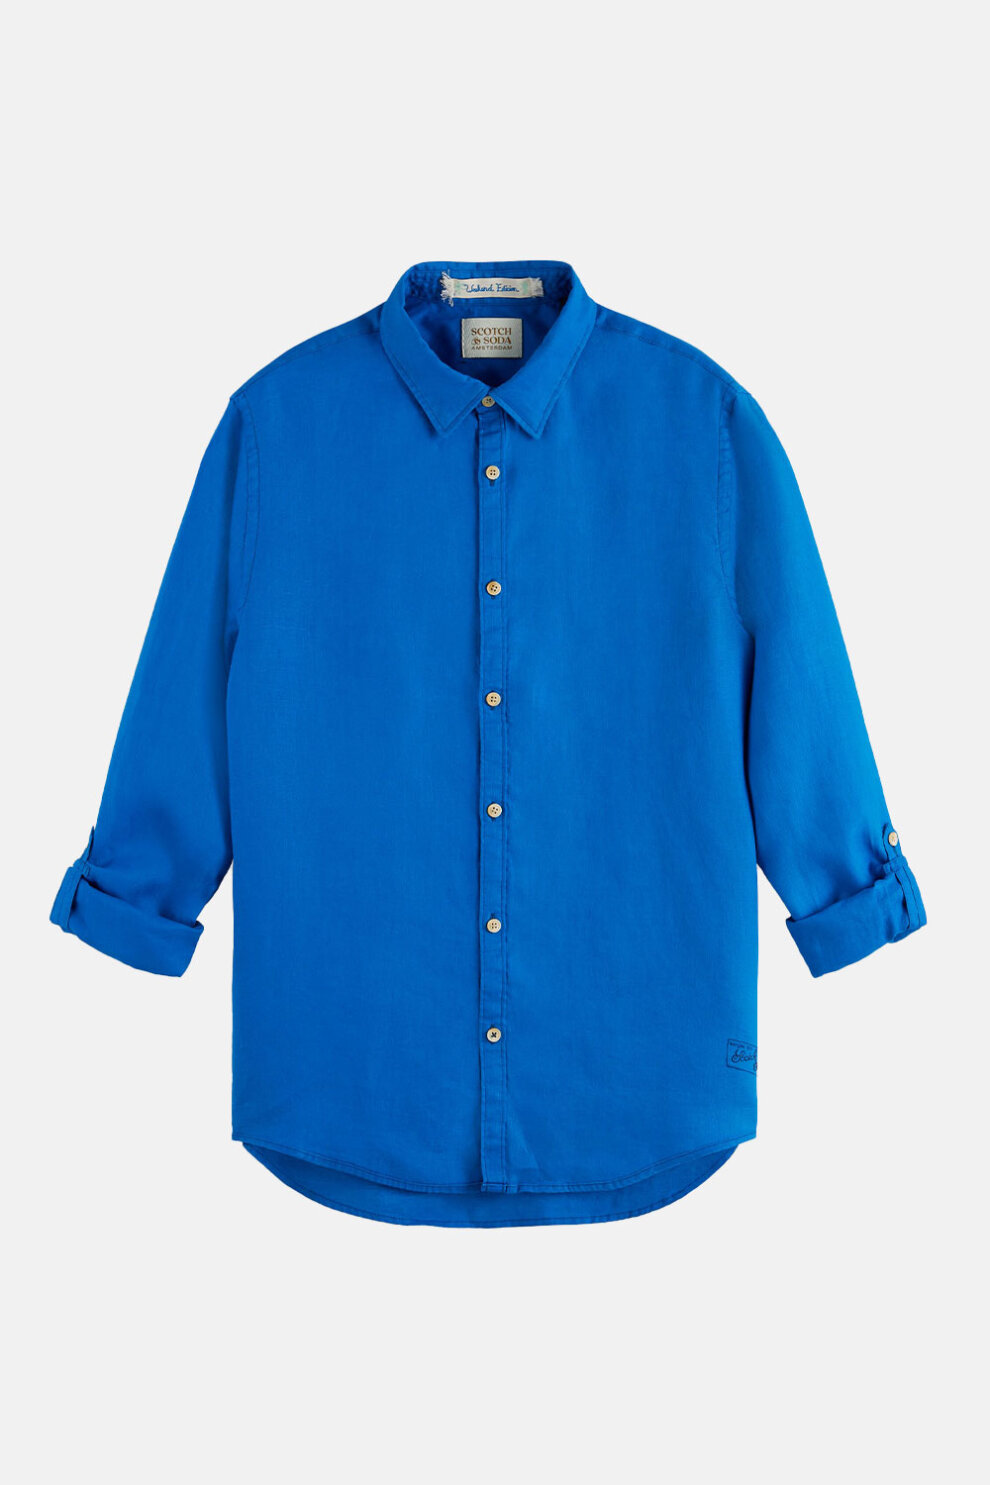 MUŠKARCI - Košulje - Scotch & Soda košulja - Dugi rukavi - Plava